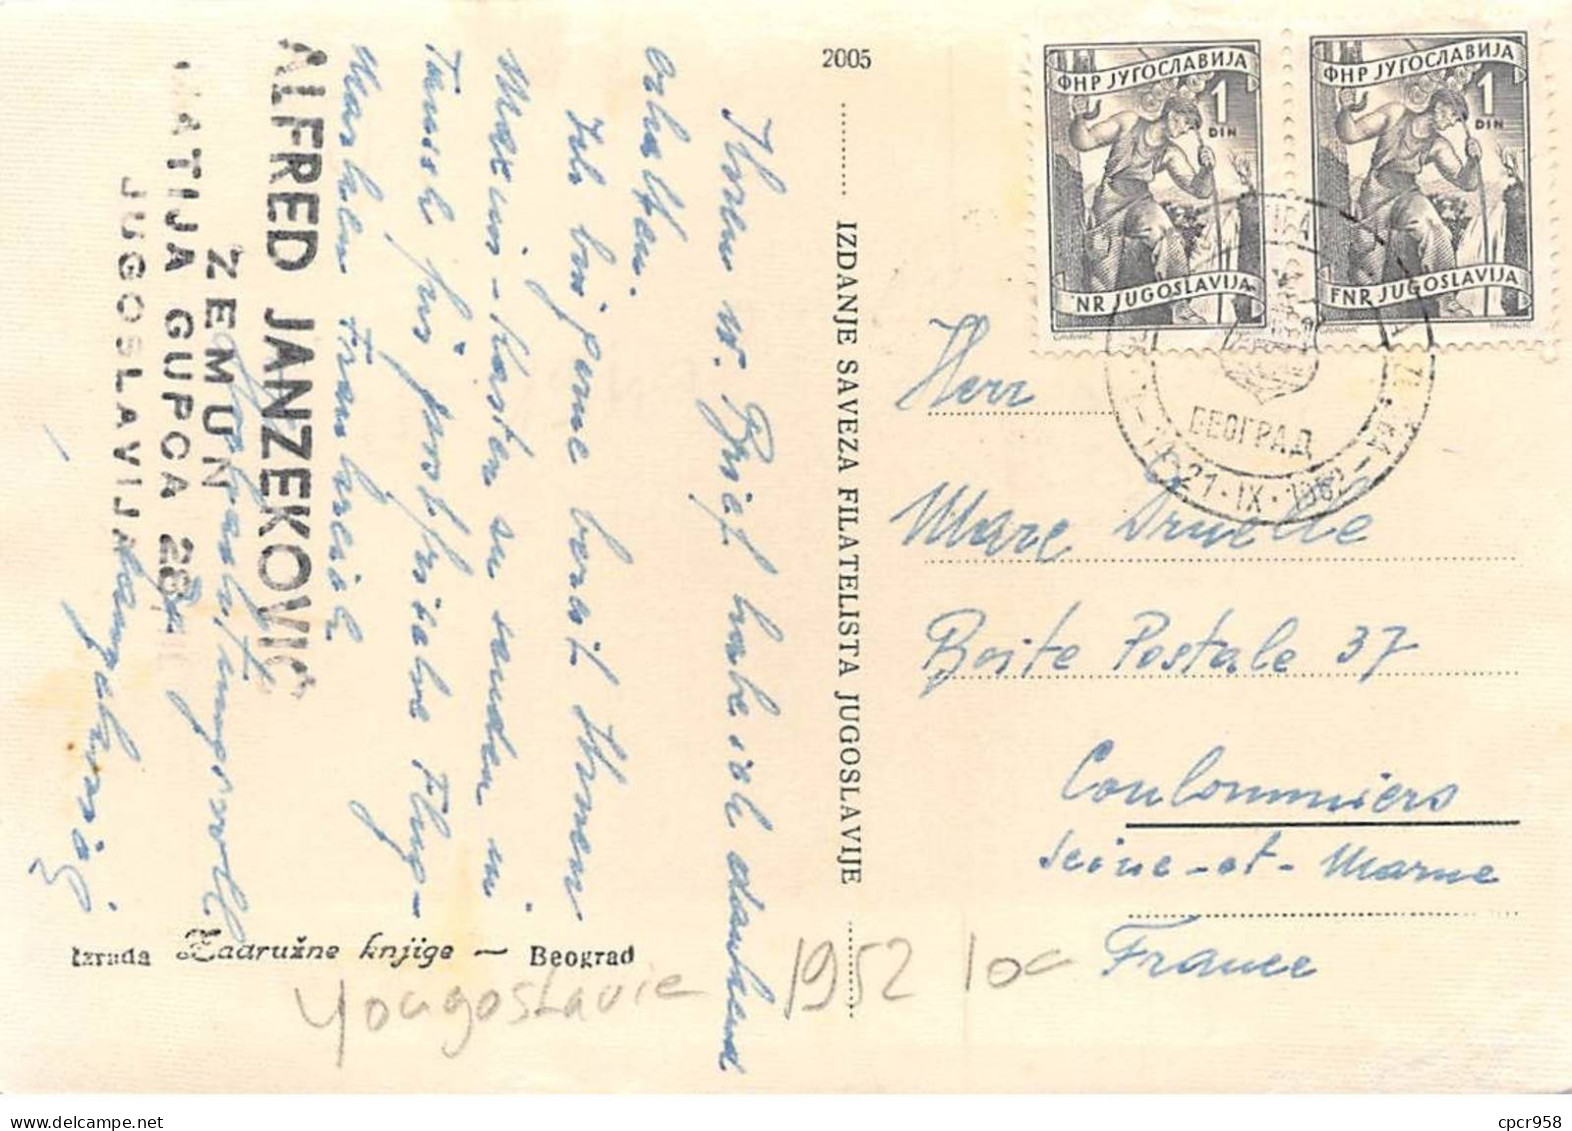 YOUGOSLAVIE.Carte Maximum.AM14109.1952.Cachet Izlozba.Exposition Philatélique De Belgrade - Oblitérés